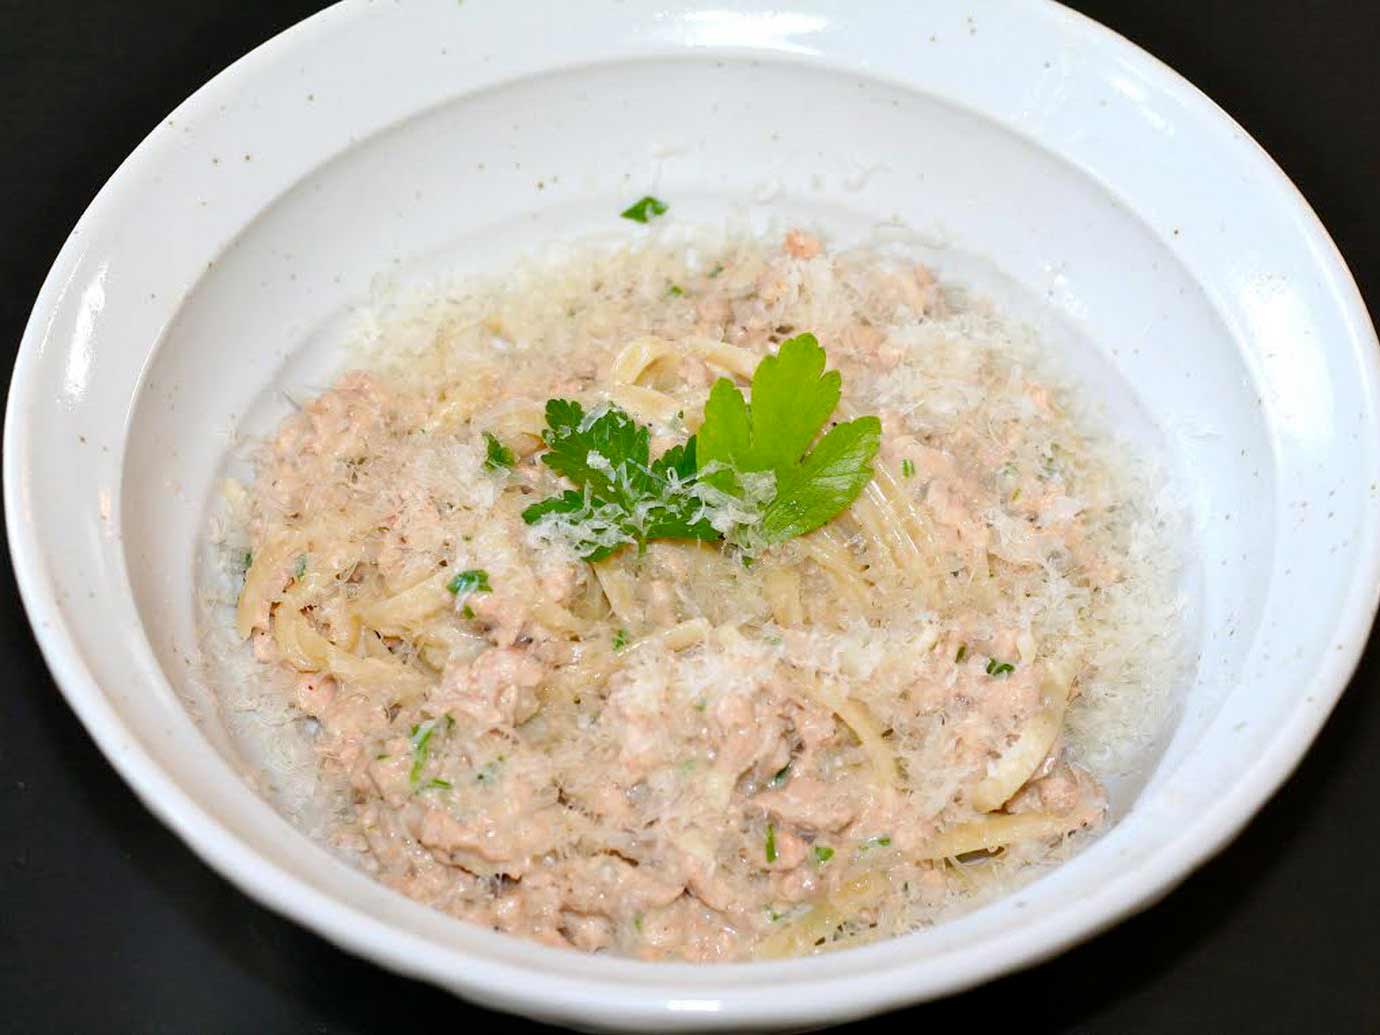 A bowl of Salmon linguini